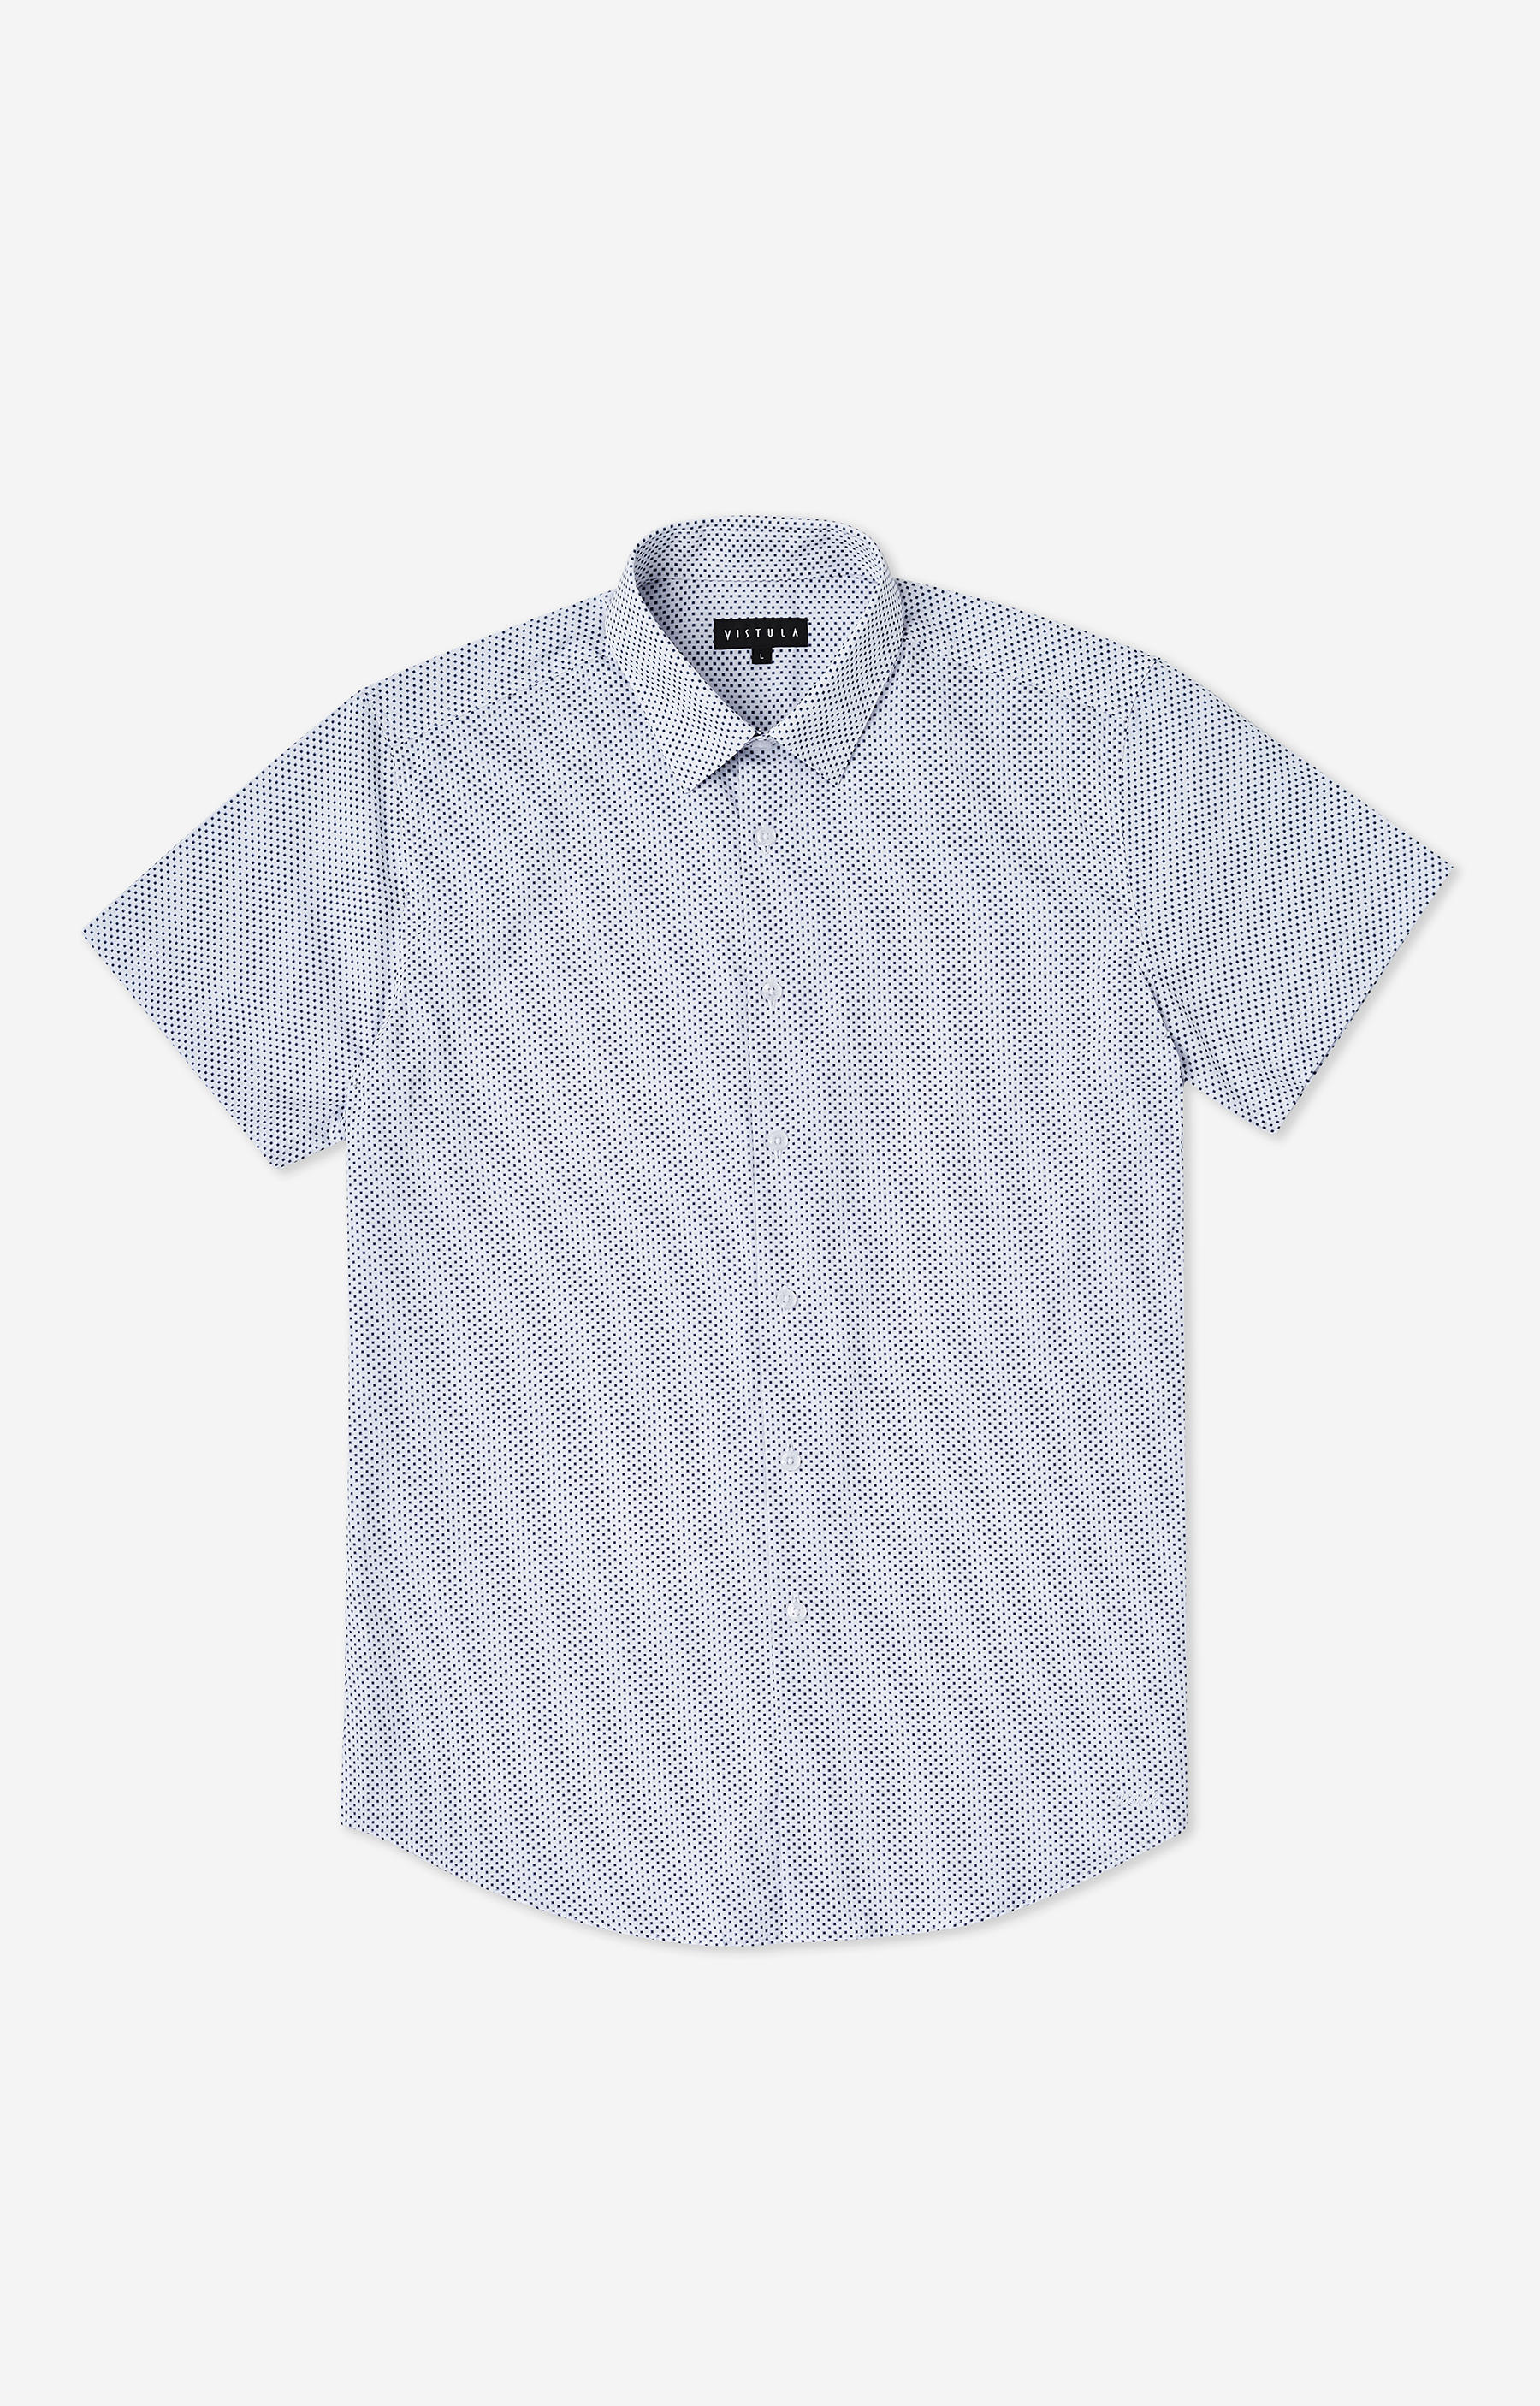 Dopasowana koszula z krótkim rękawem w print z kołnierzem kryte button-down